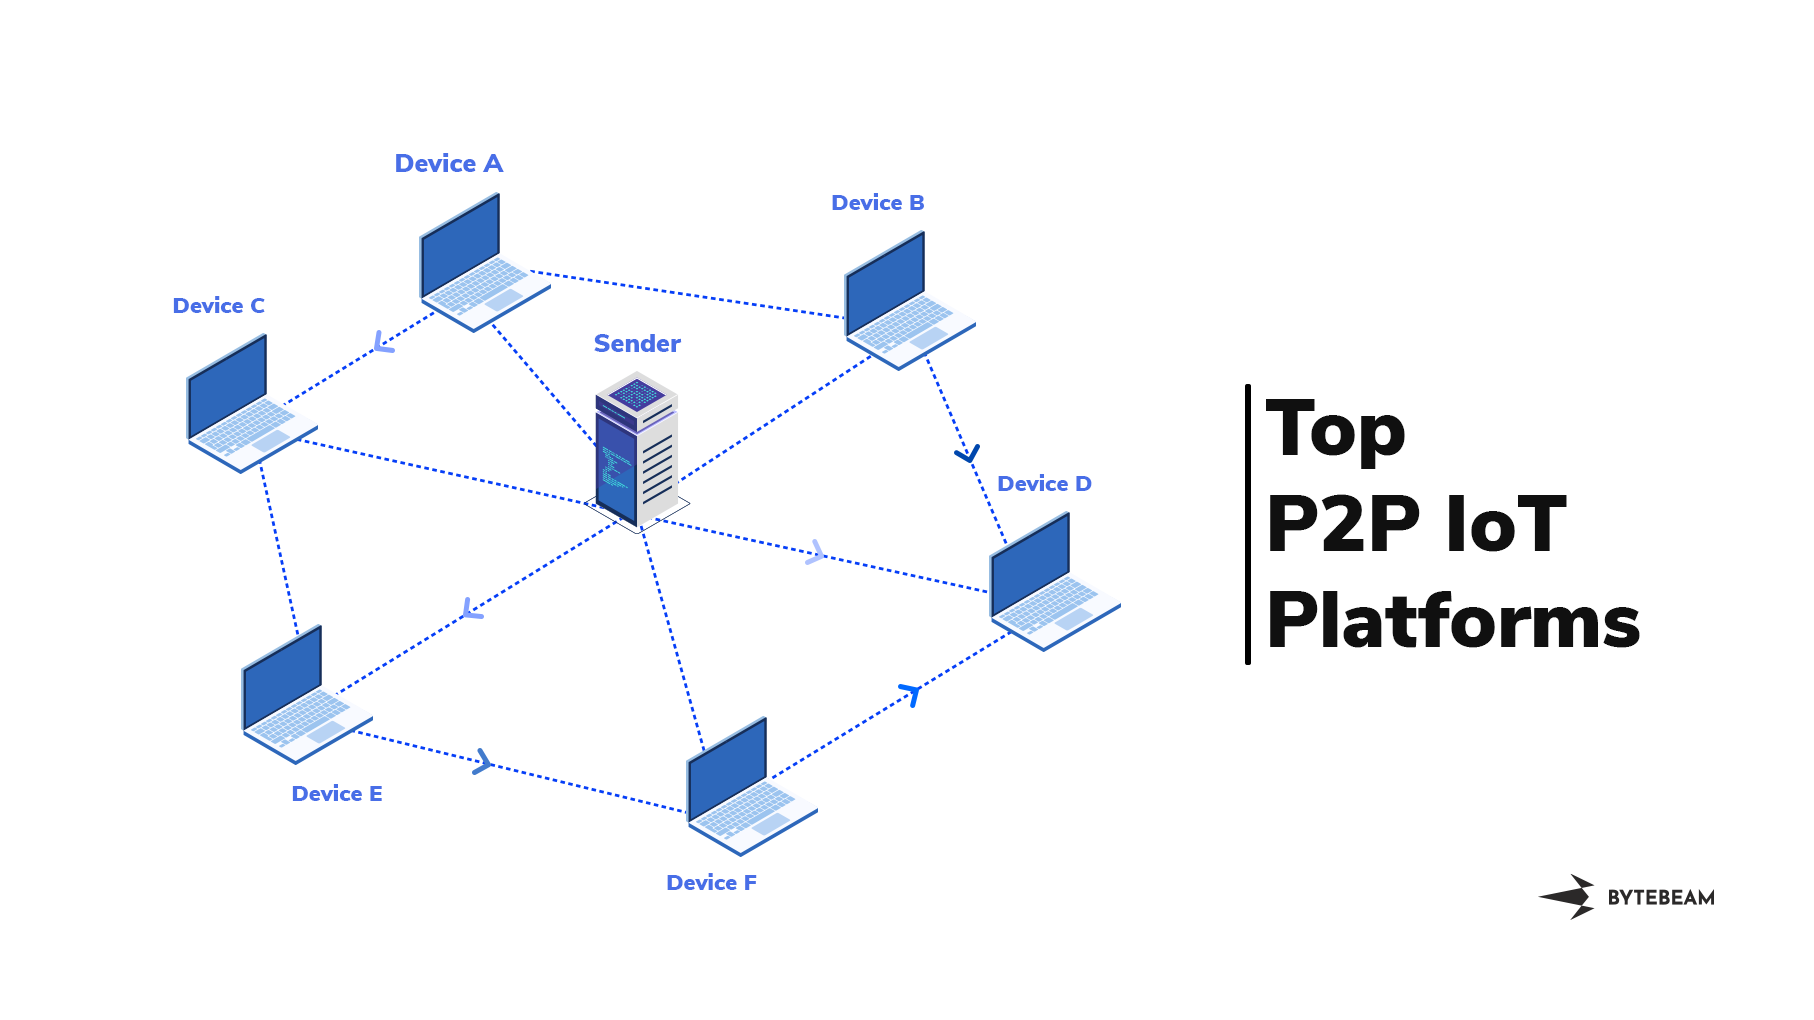 Top P2P IoT Platforms